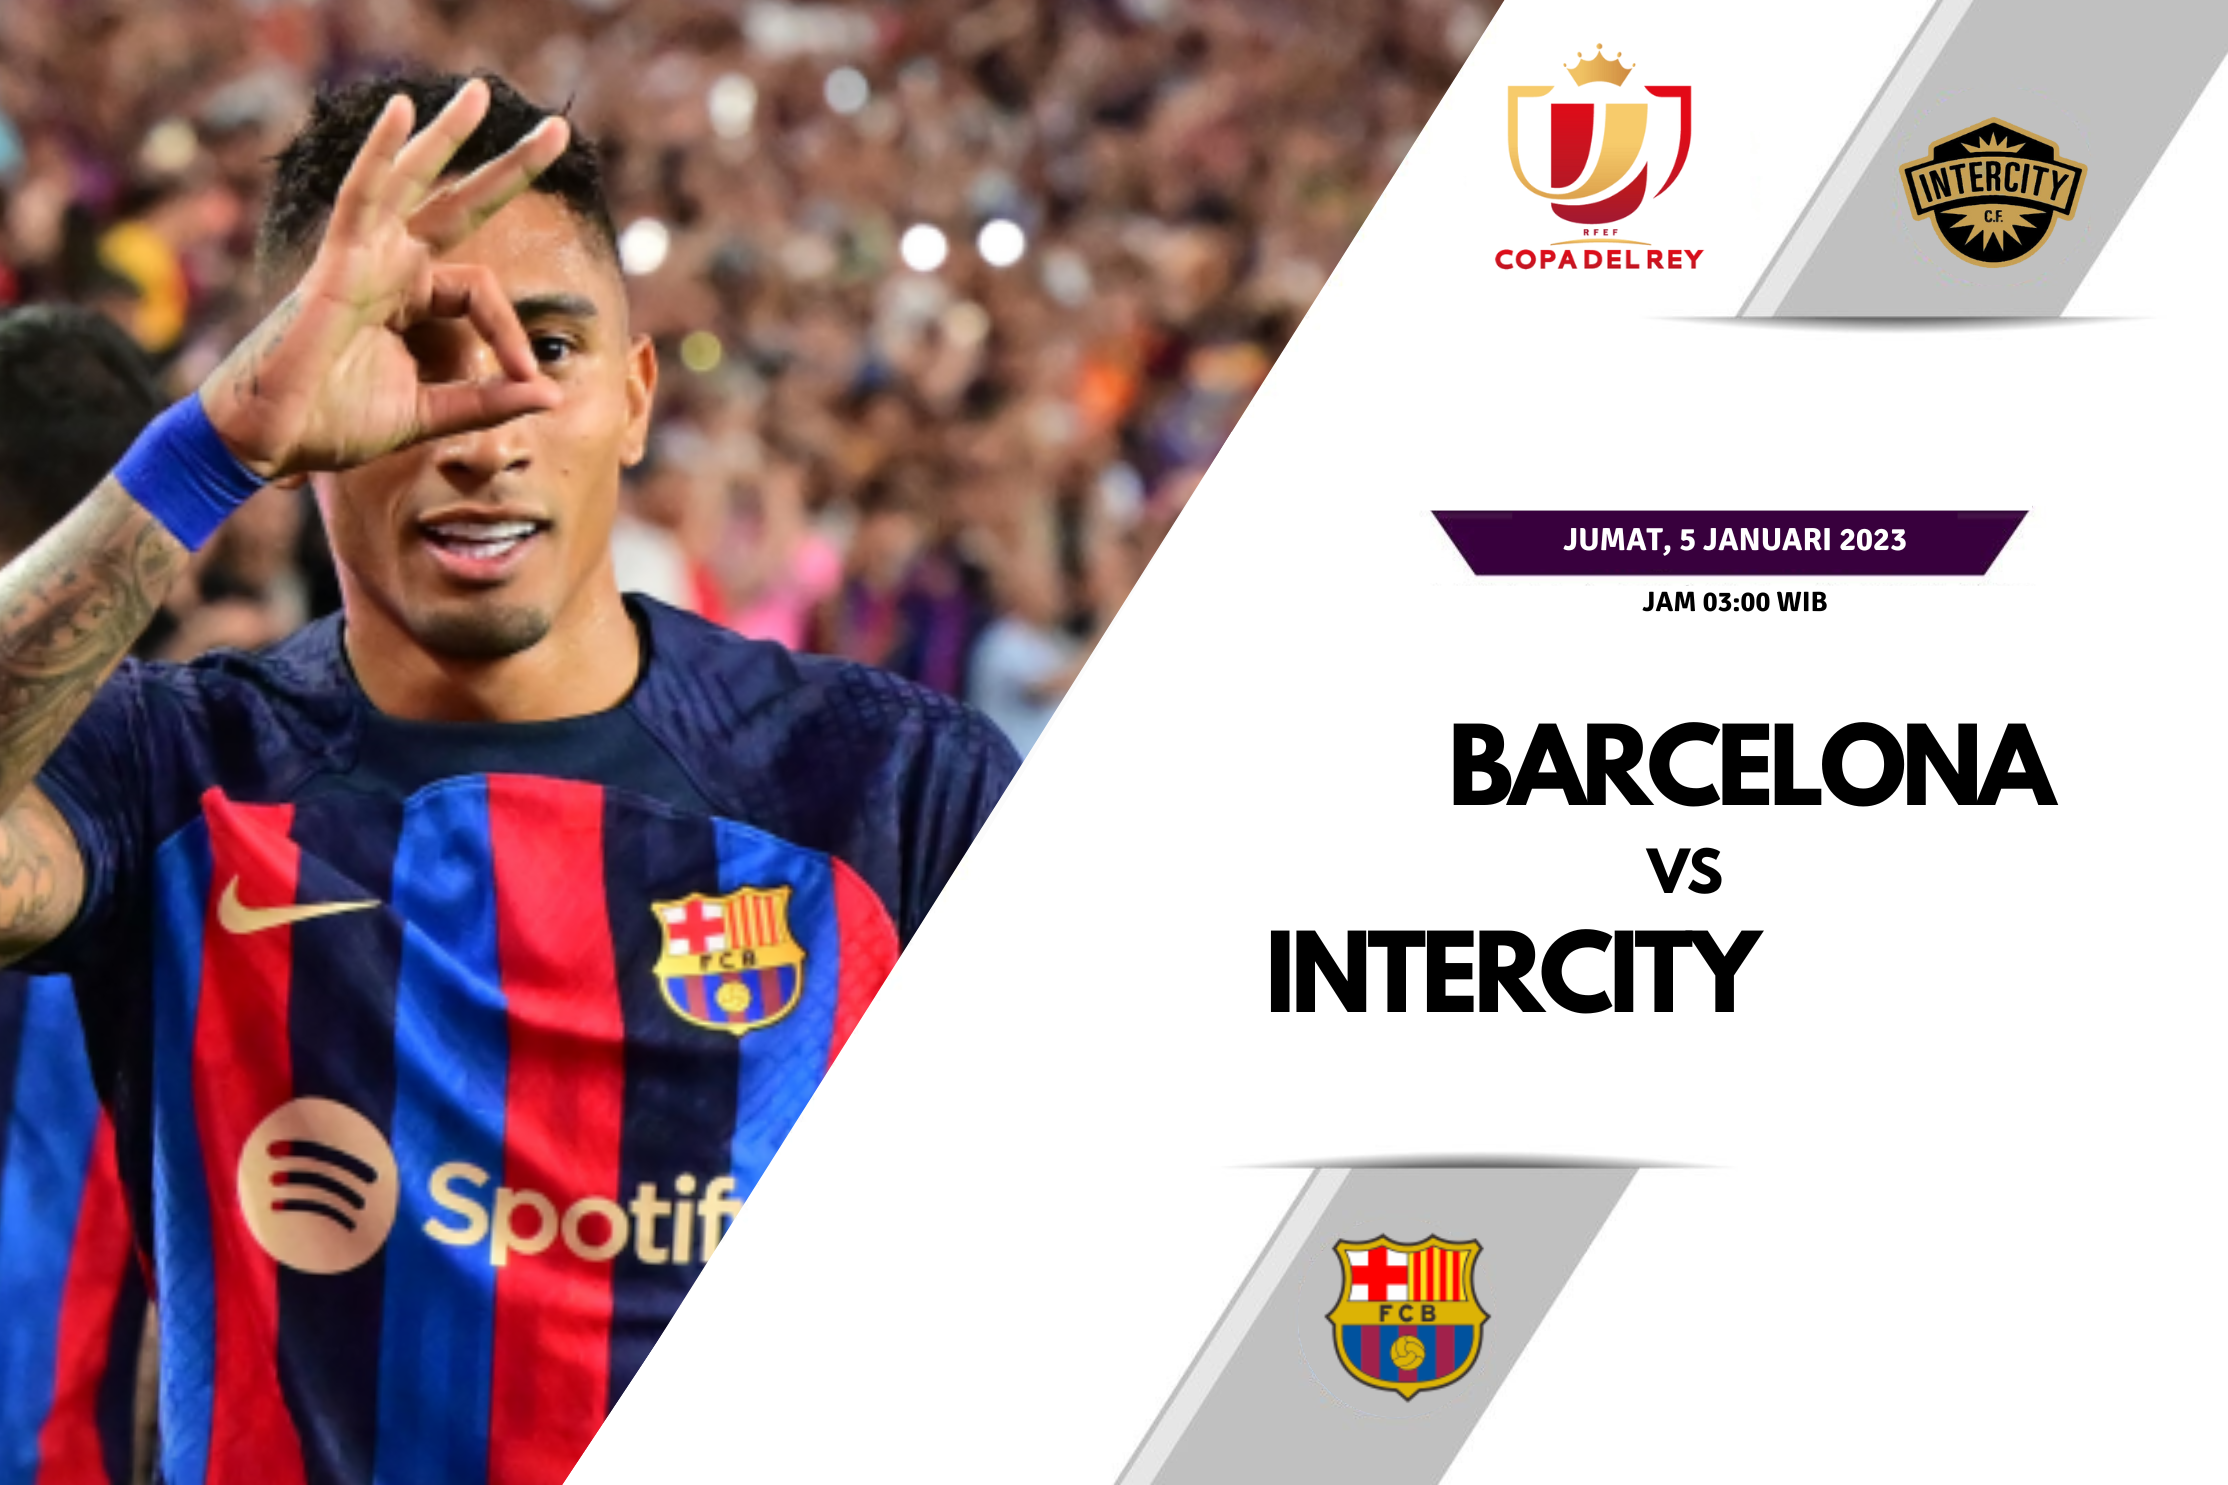 Prediksi Intercity vs Barcelona 5 Januari 2023